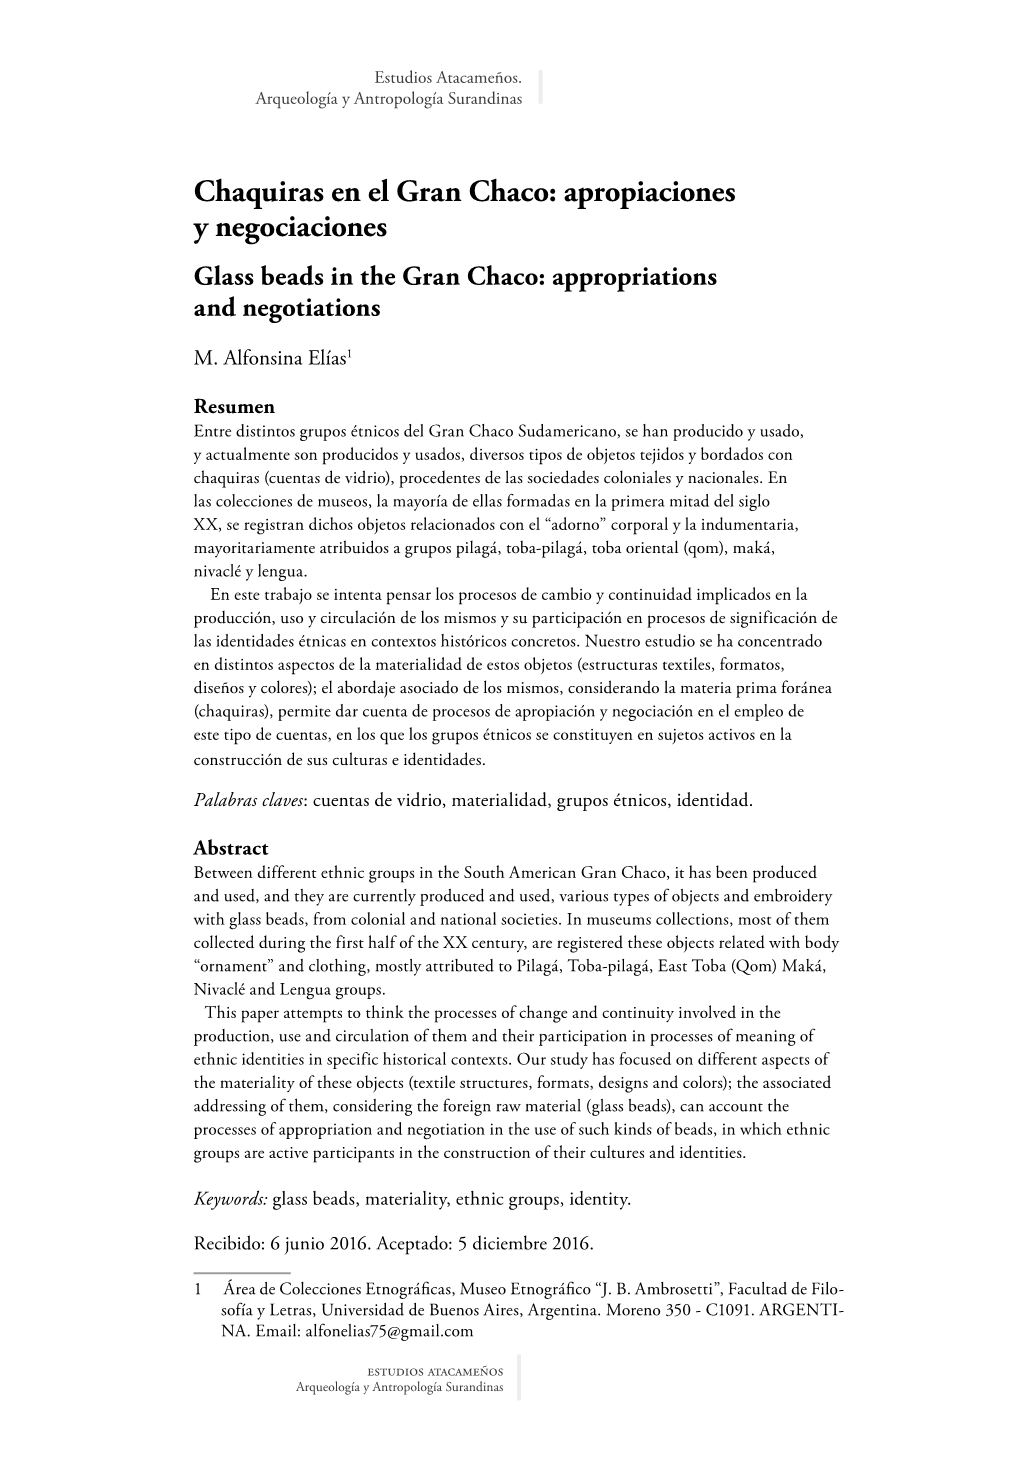 Chaquiras En El Gran Chaco: Apropiaciones Y Negociaciones Glass Beads in the Gran Chaco: Appropriations and Negotiations